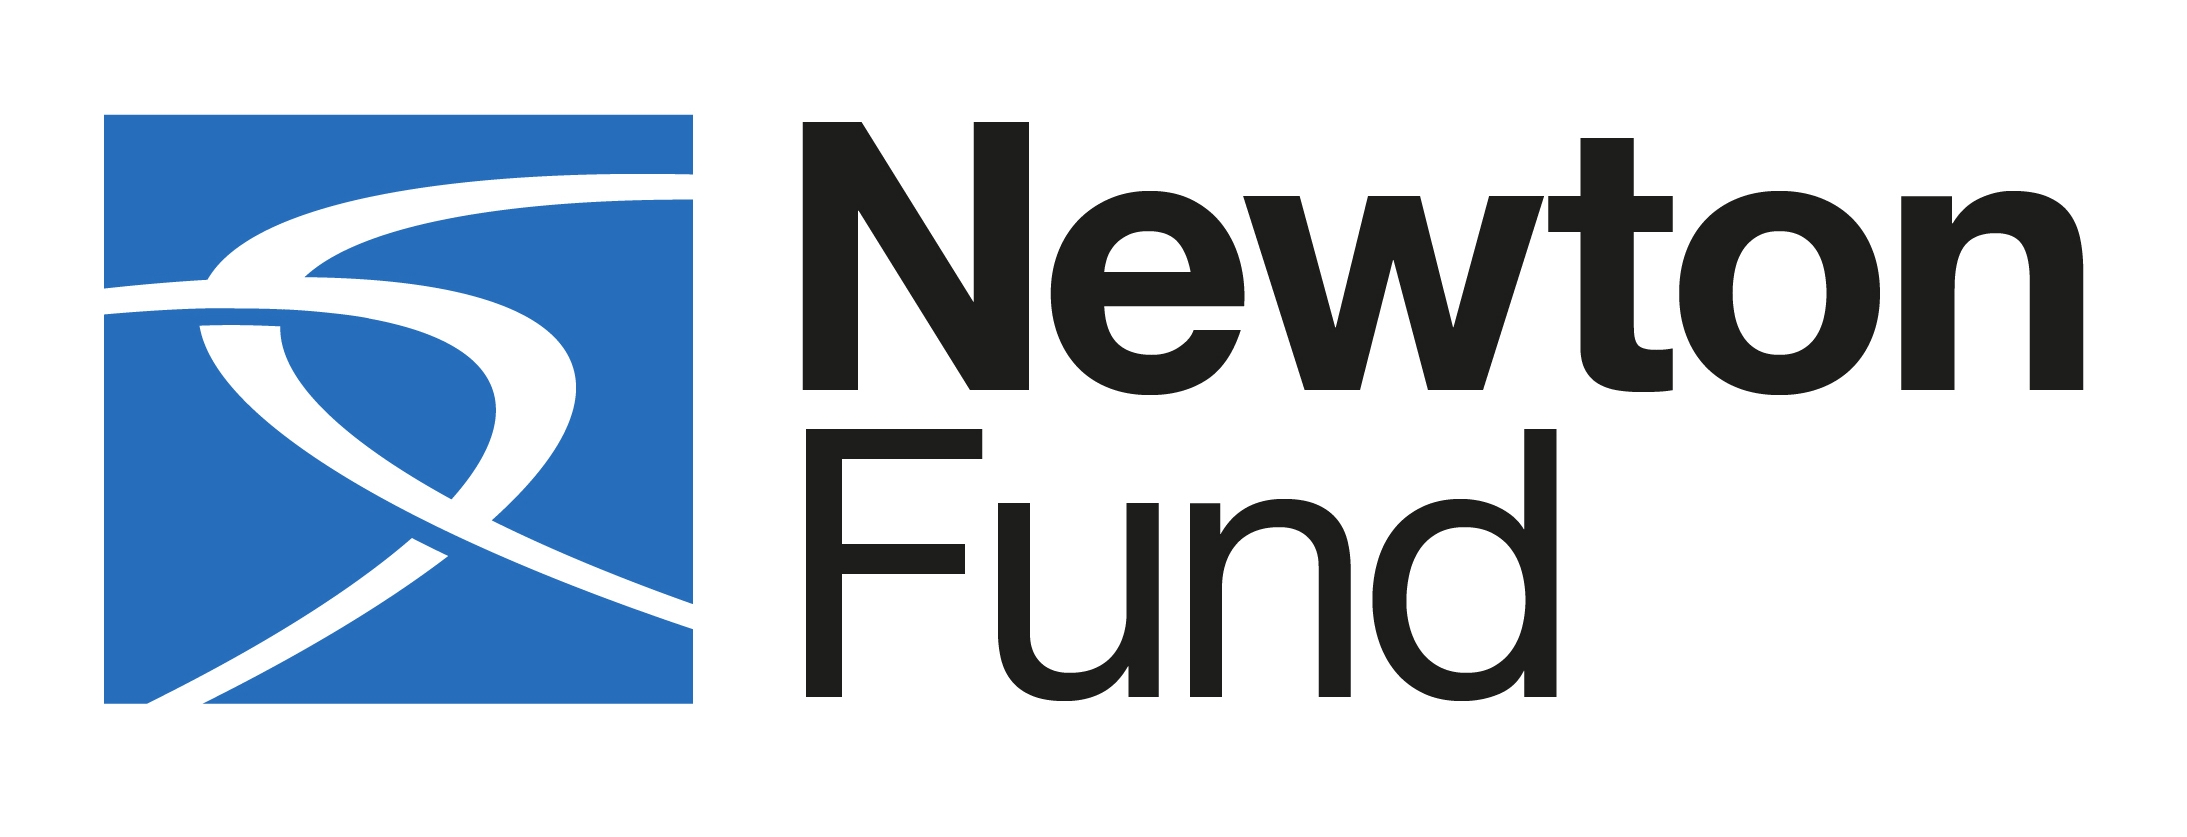 Newton Fund